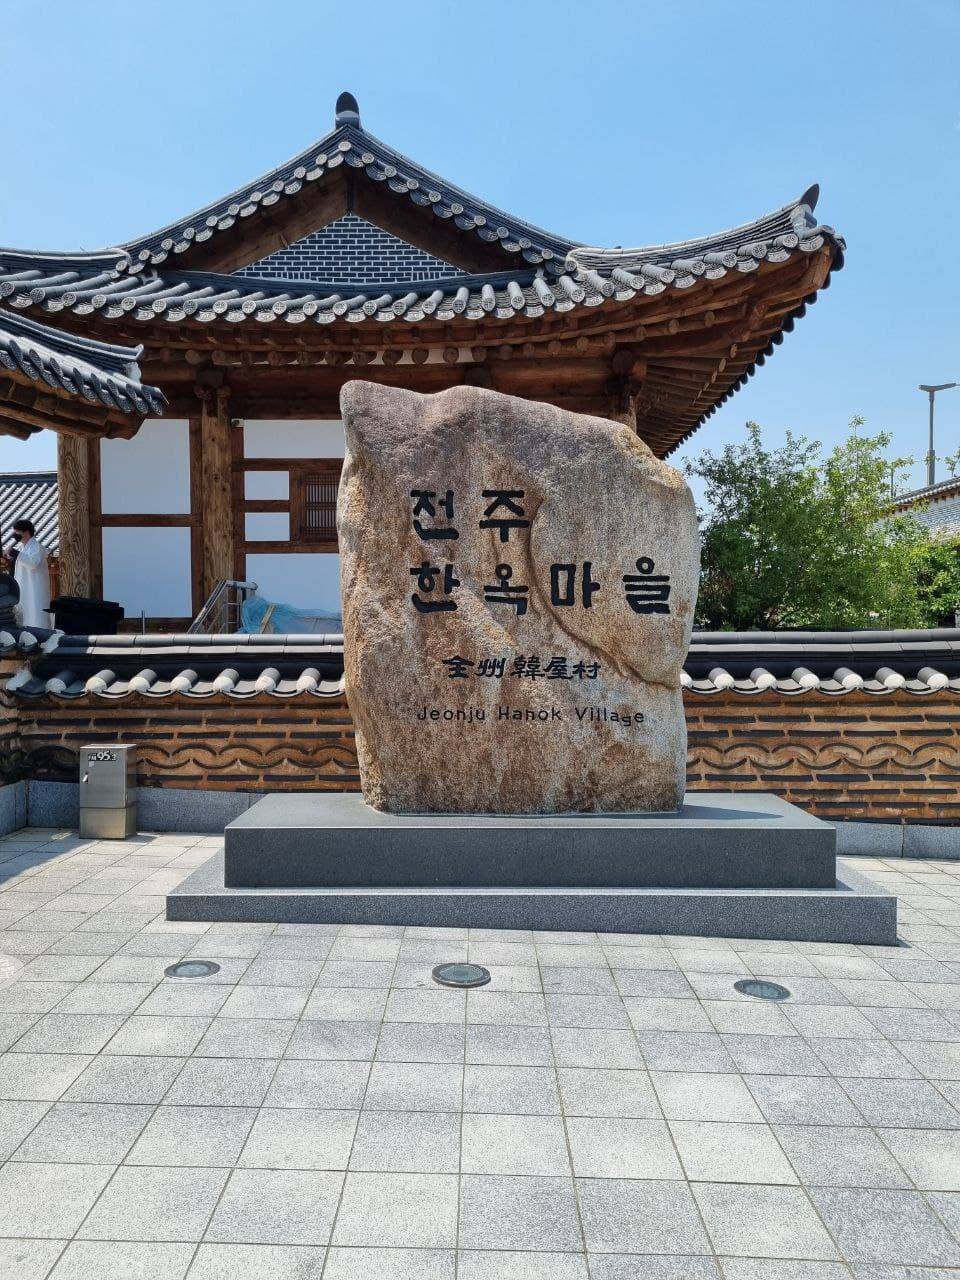 Jeonju Hanok Village: Feel that Atmosphere